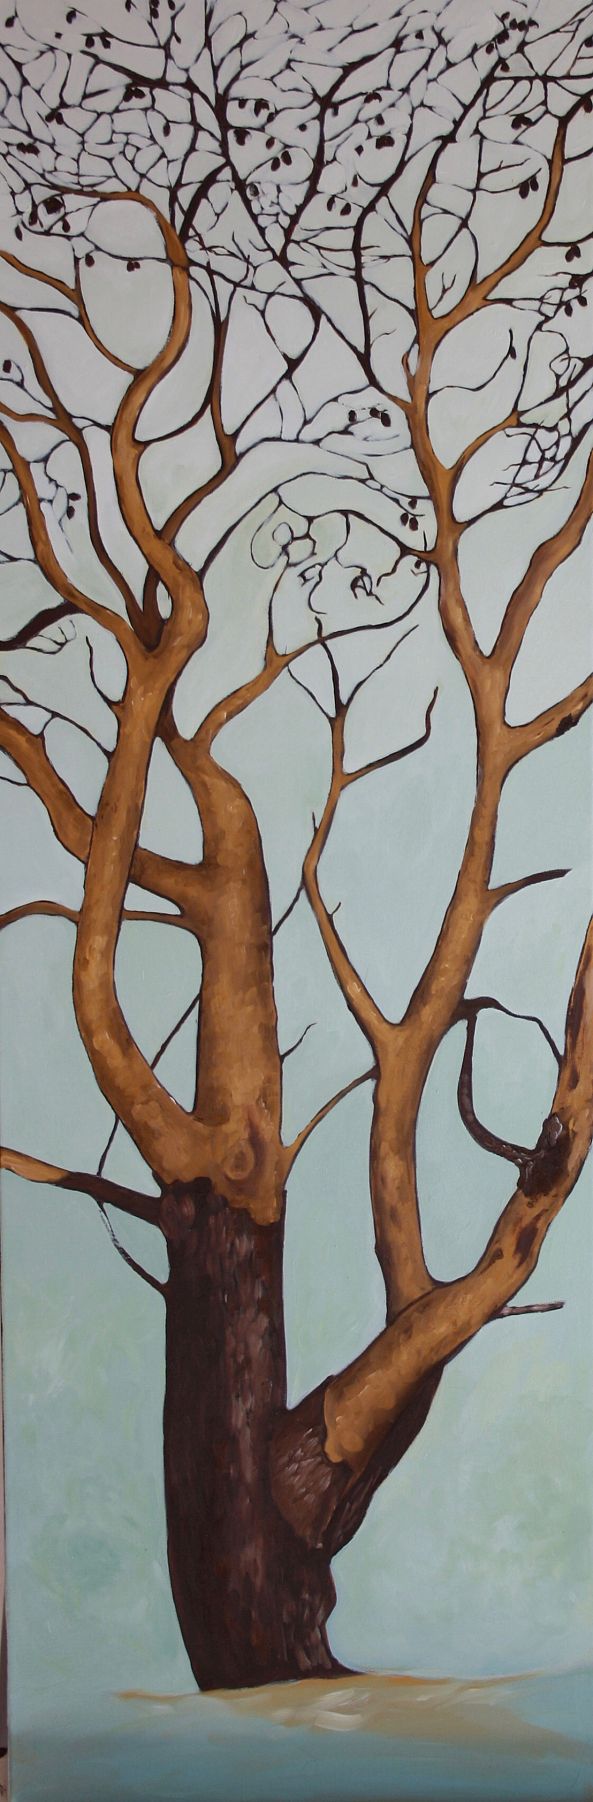 L'arbre doré-Stéphanie MURTAS